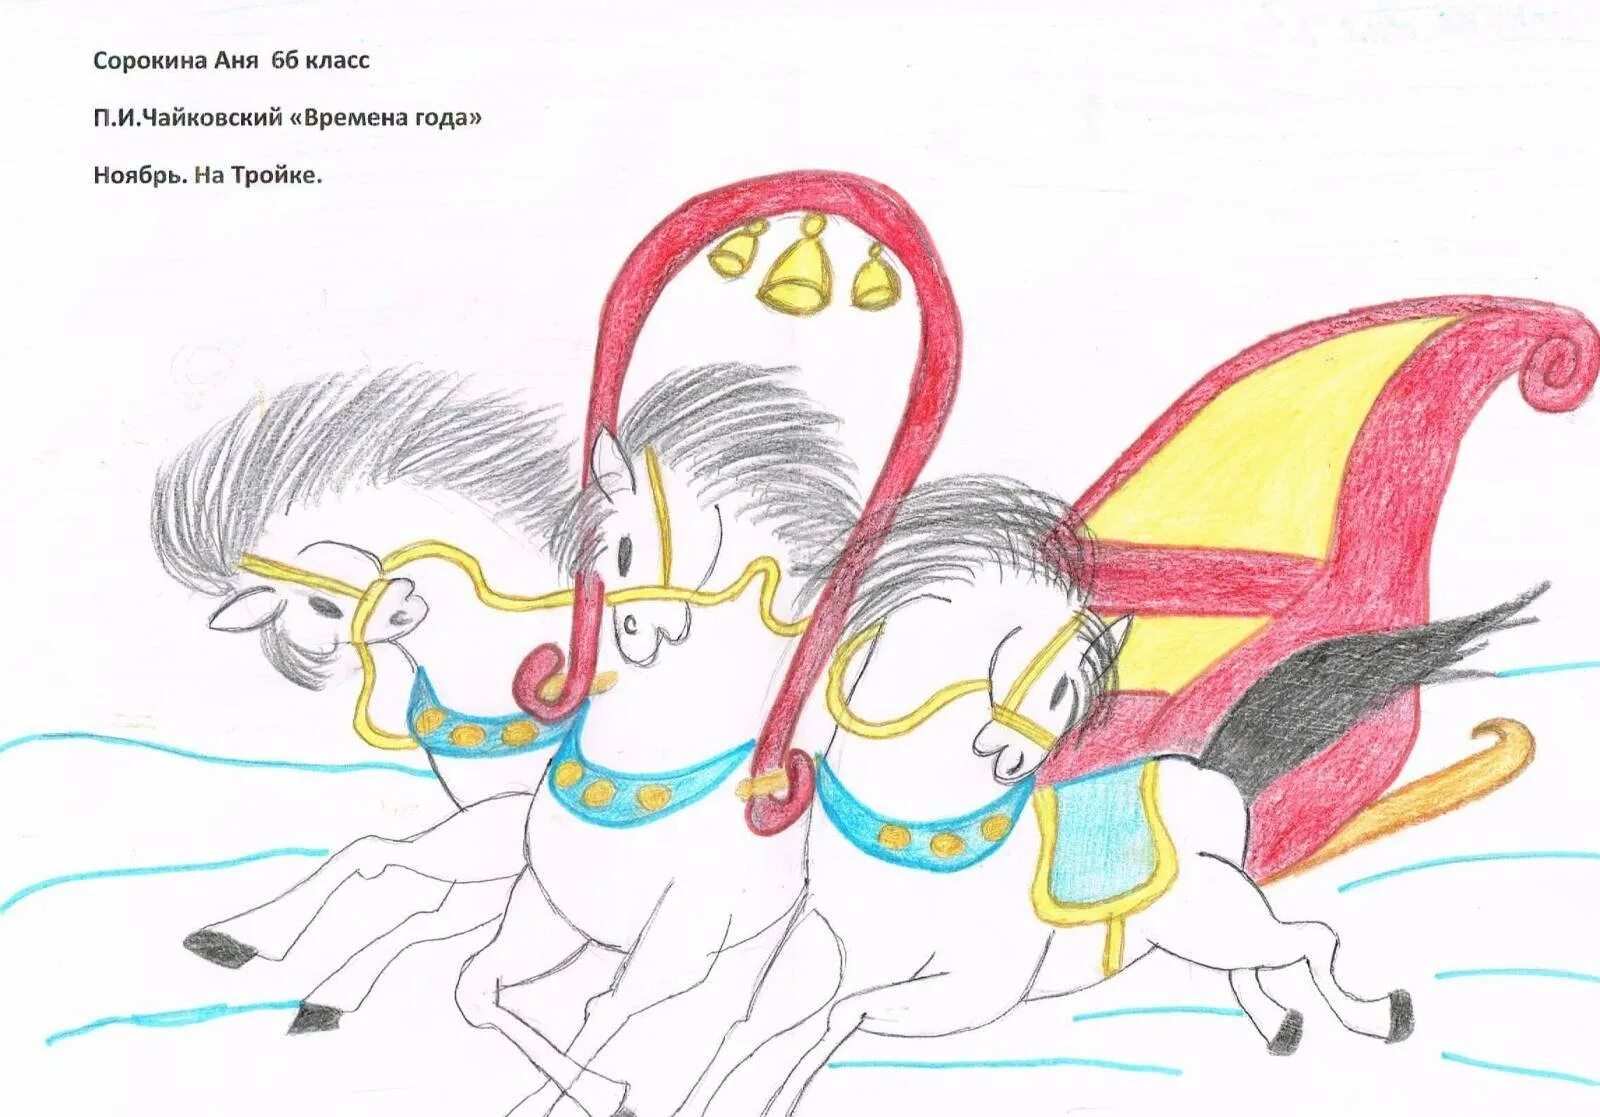 Произведение свиридова тройка. Иллюстрация к произведению тройка Свиридова. Рисунок к пьесе тройка Свиридова. Тройка лошадей рисунок детский. Тройка коней детский рисунок.